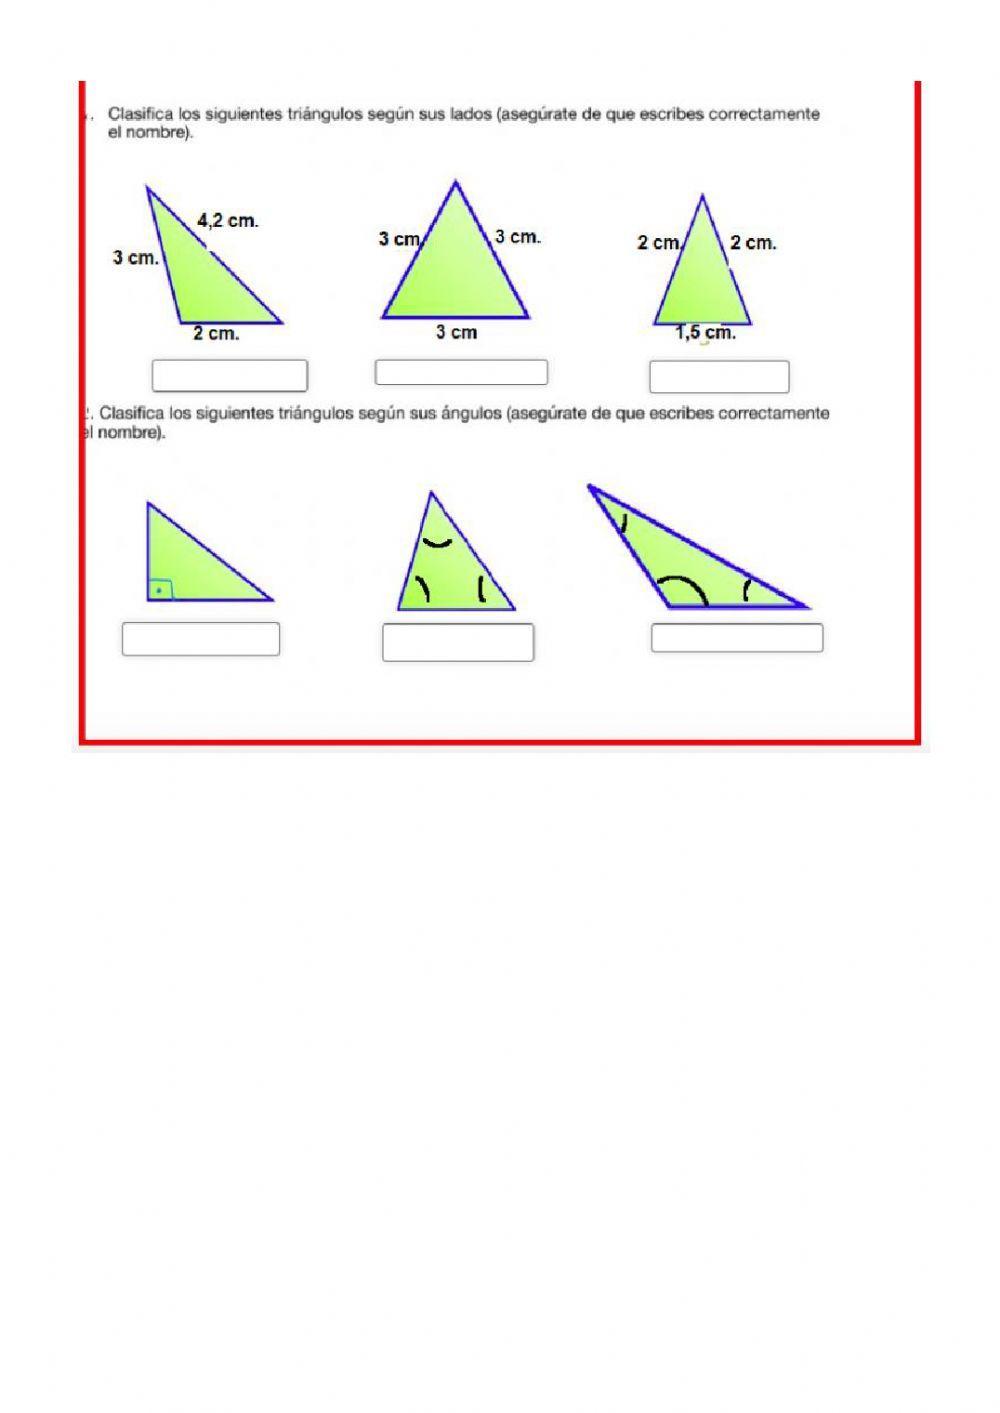 Clasificación de triángulos